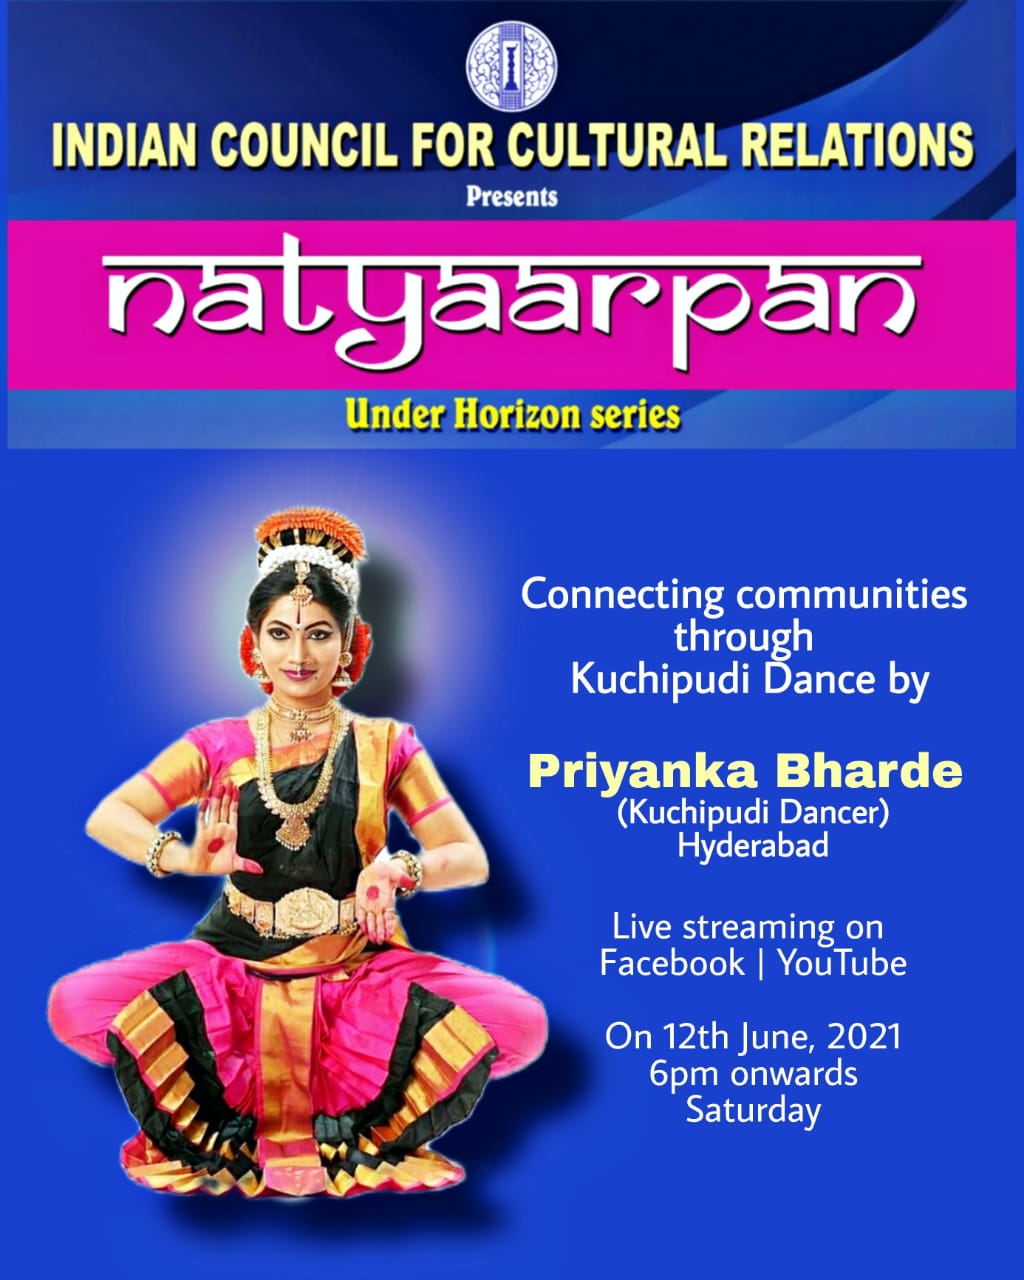 NATYAARPAN - एक आभासी कुचिपुड़ी नृत्य प्रदर्शन शनिवार 12 जून, 2021 को शाम 6.00 बजे ICCR हैदराबाद द्वारा Facebook और YouTube पर लाइव